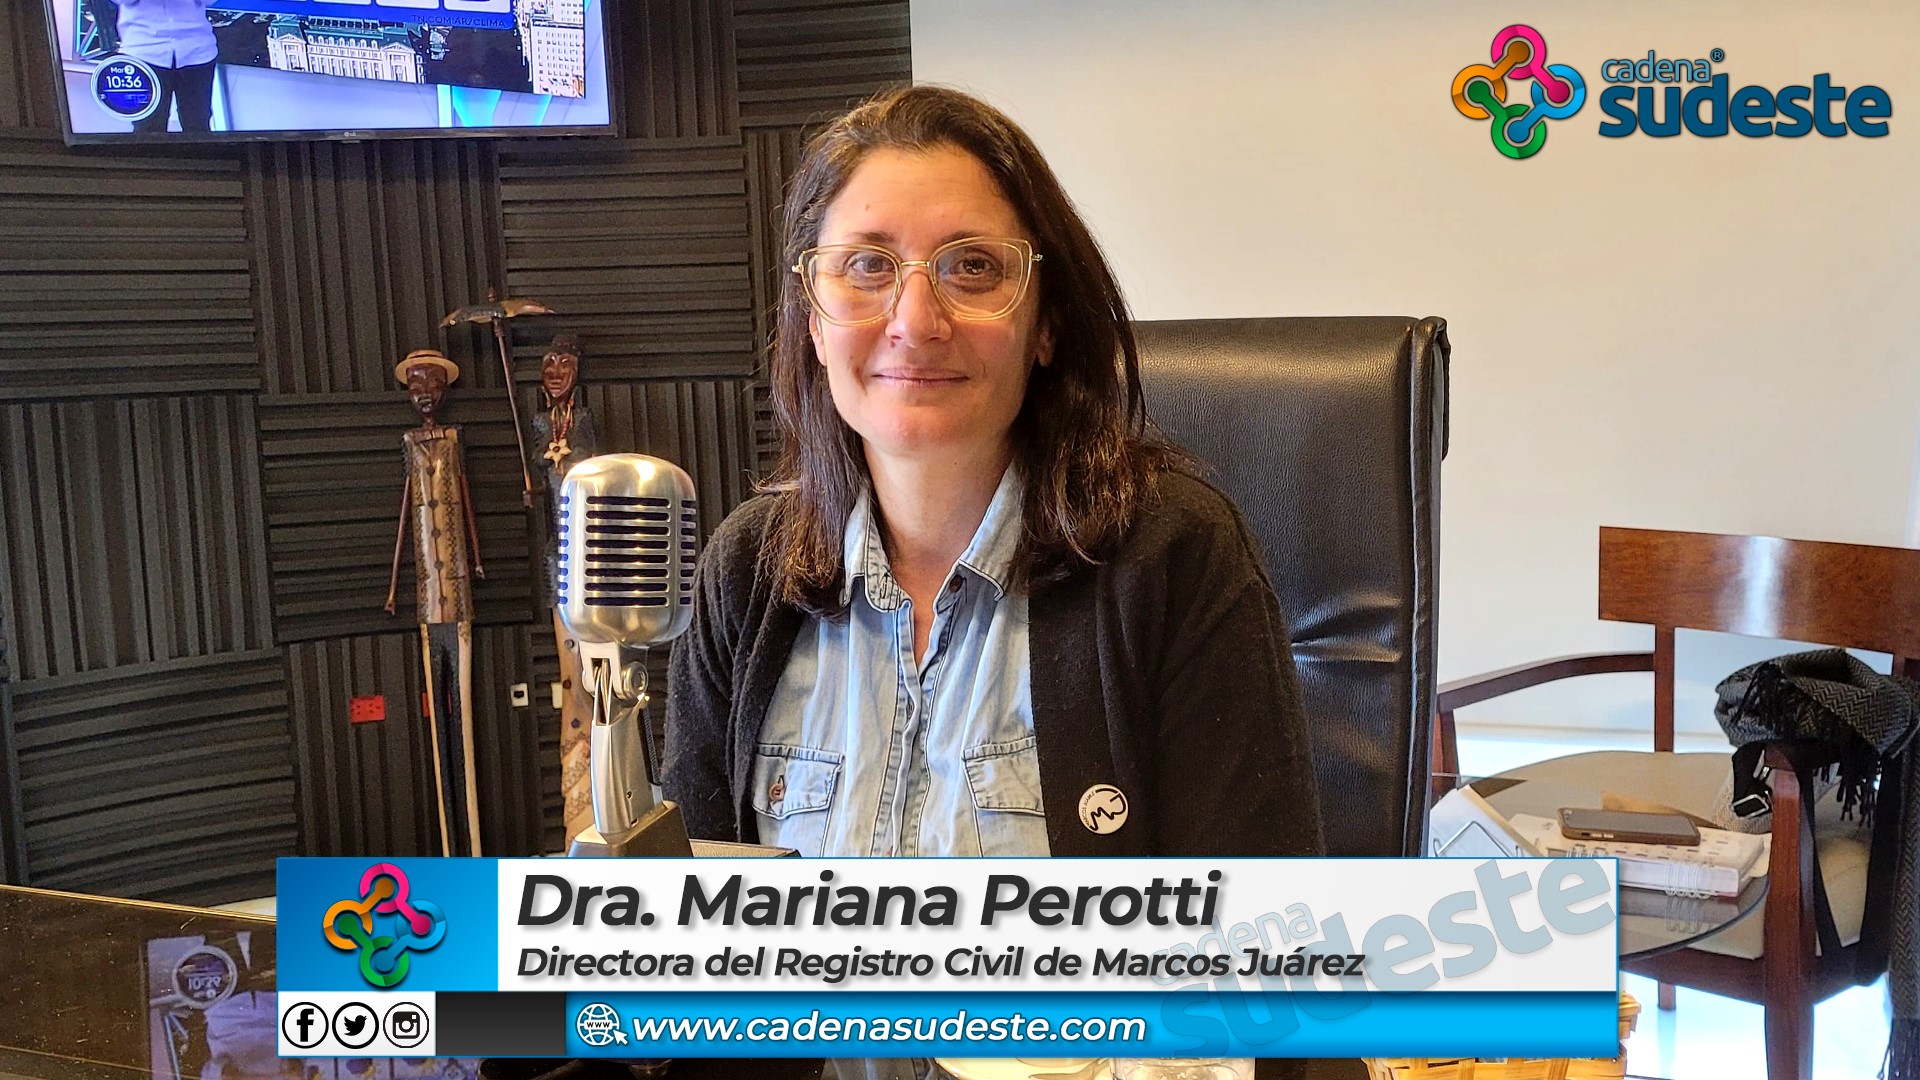 La Dra. Mariana Perotti asumió la titularidad del Registro Civil en el marco de adaptación a los cambios sociales y legales